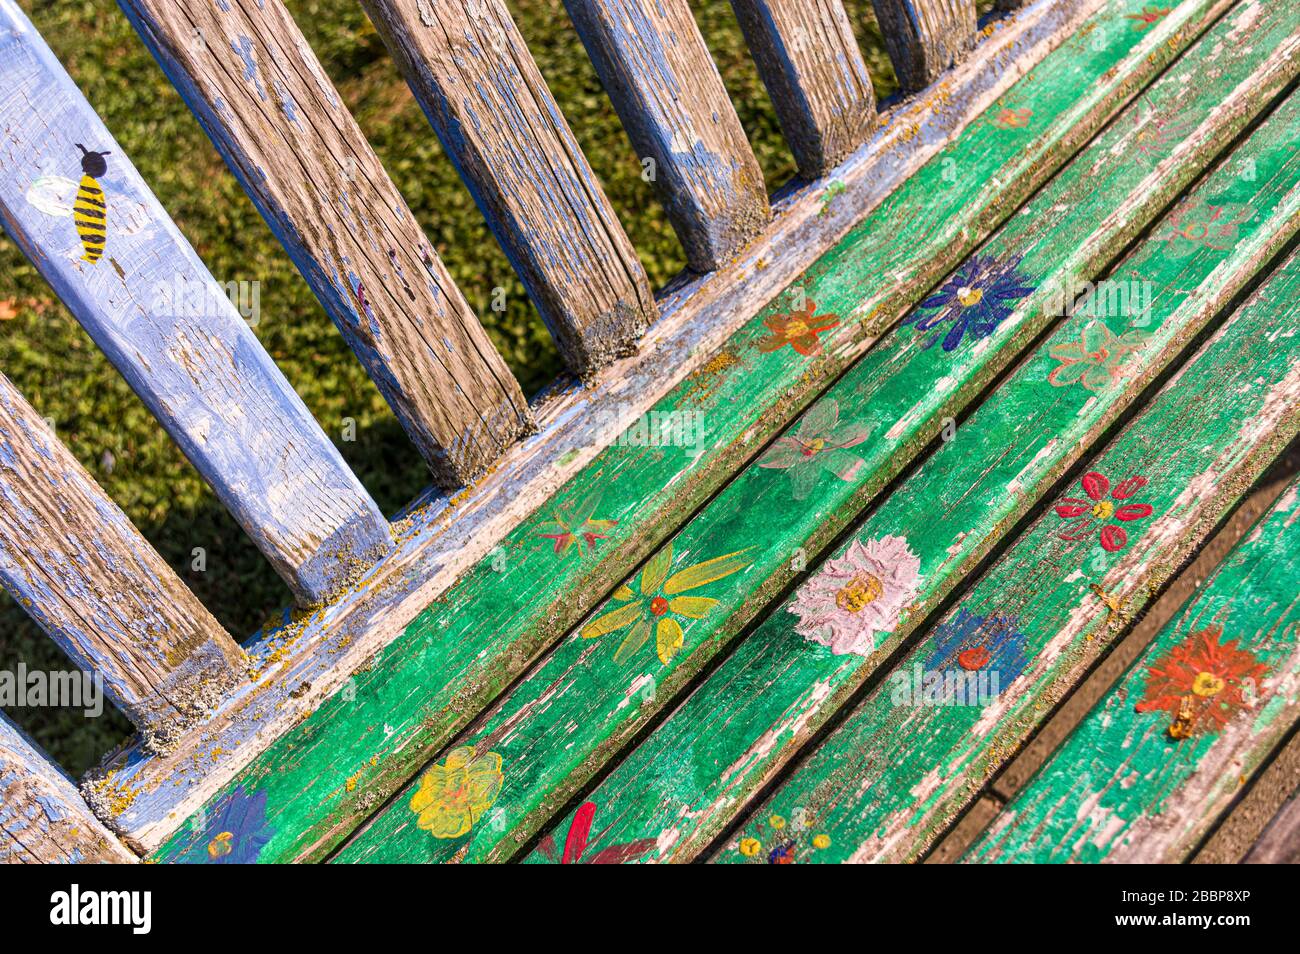 Banc coloré peint à la main et résisté à l'eau ou banc de parc avec fleurs, pétales et abeilles de différentes couleurs se forment dans une zone verte urbaine Banque D'Images